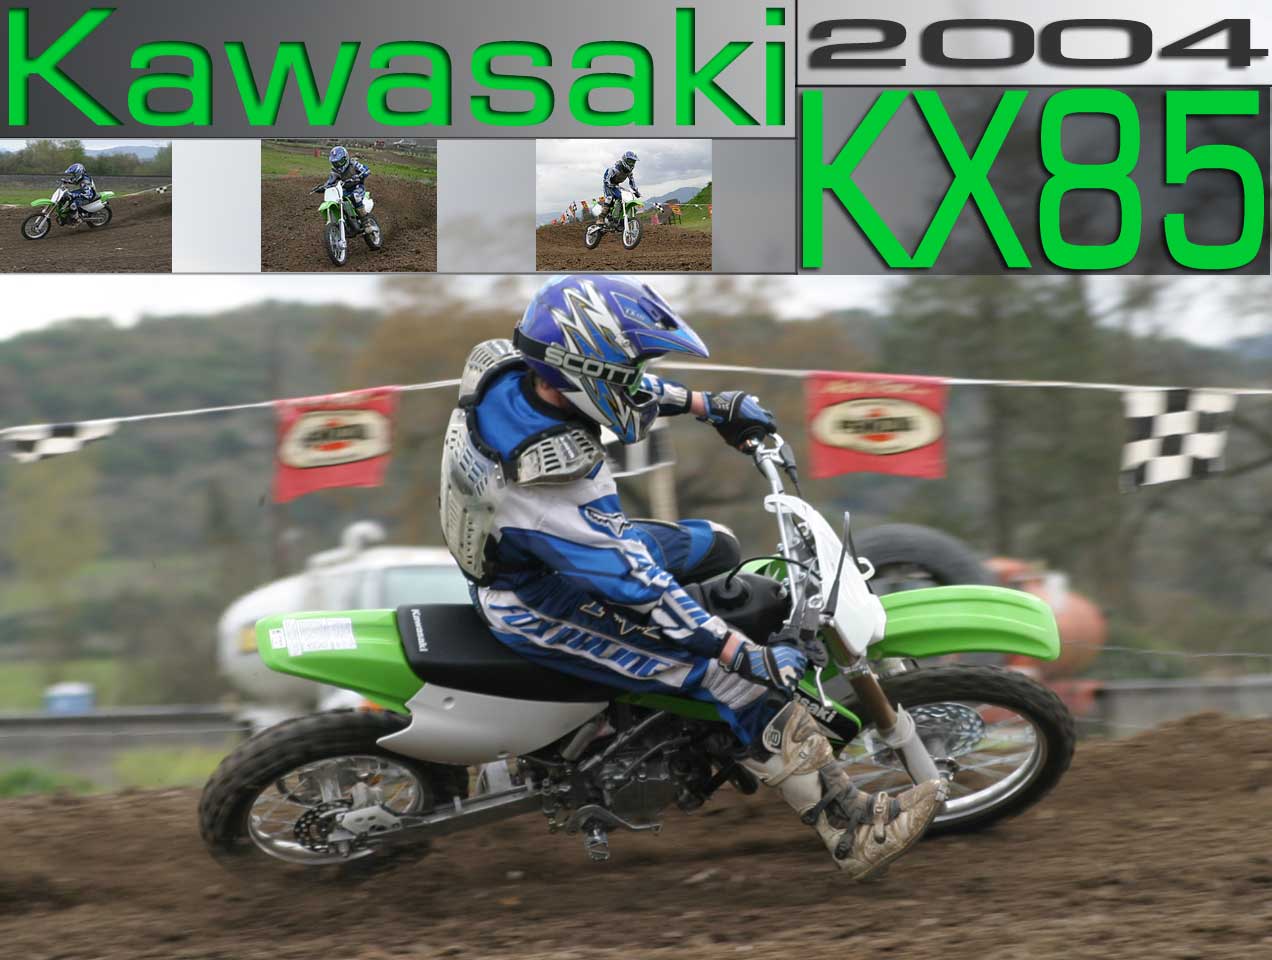 2004款川崎KX85摩托车图片1